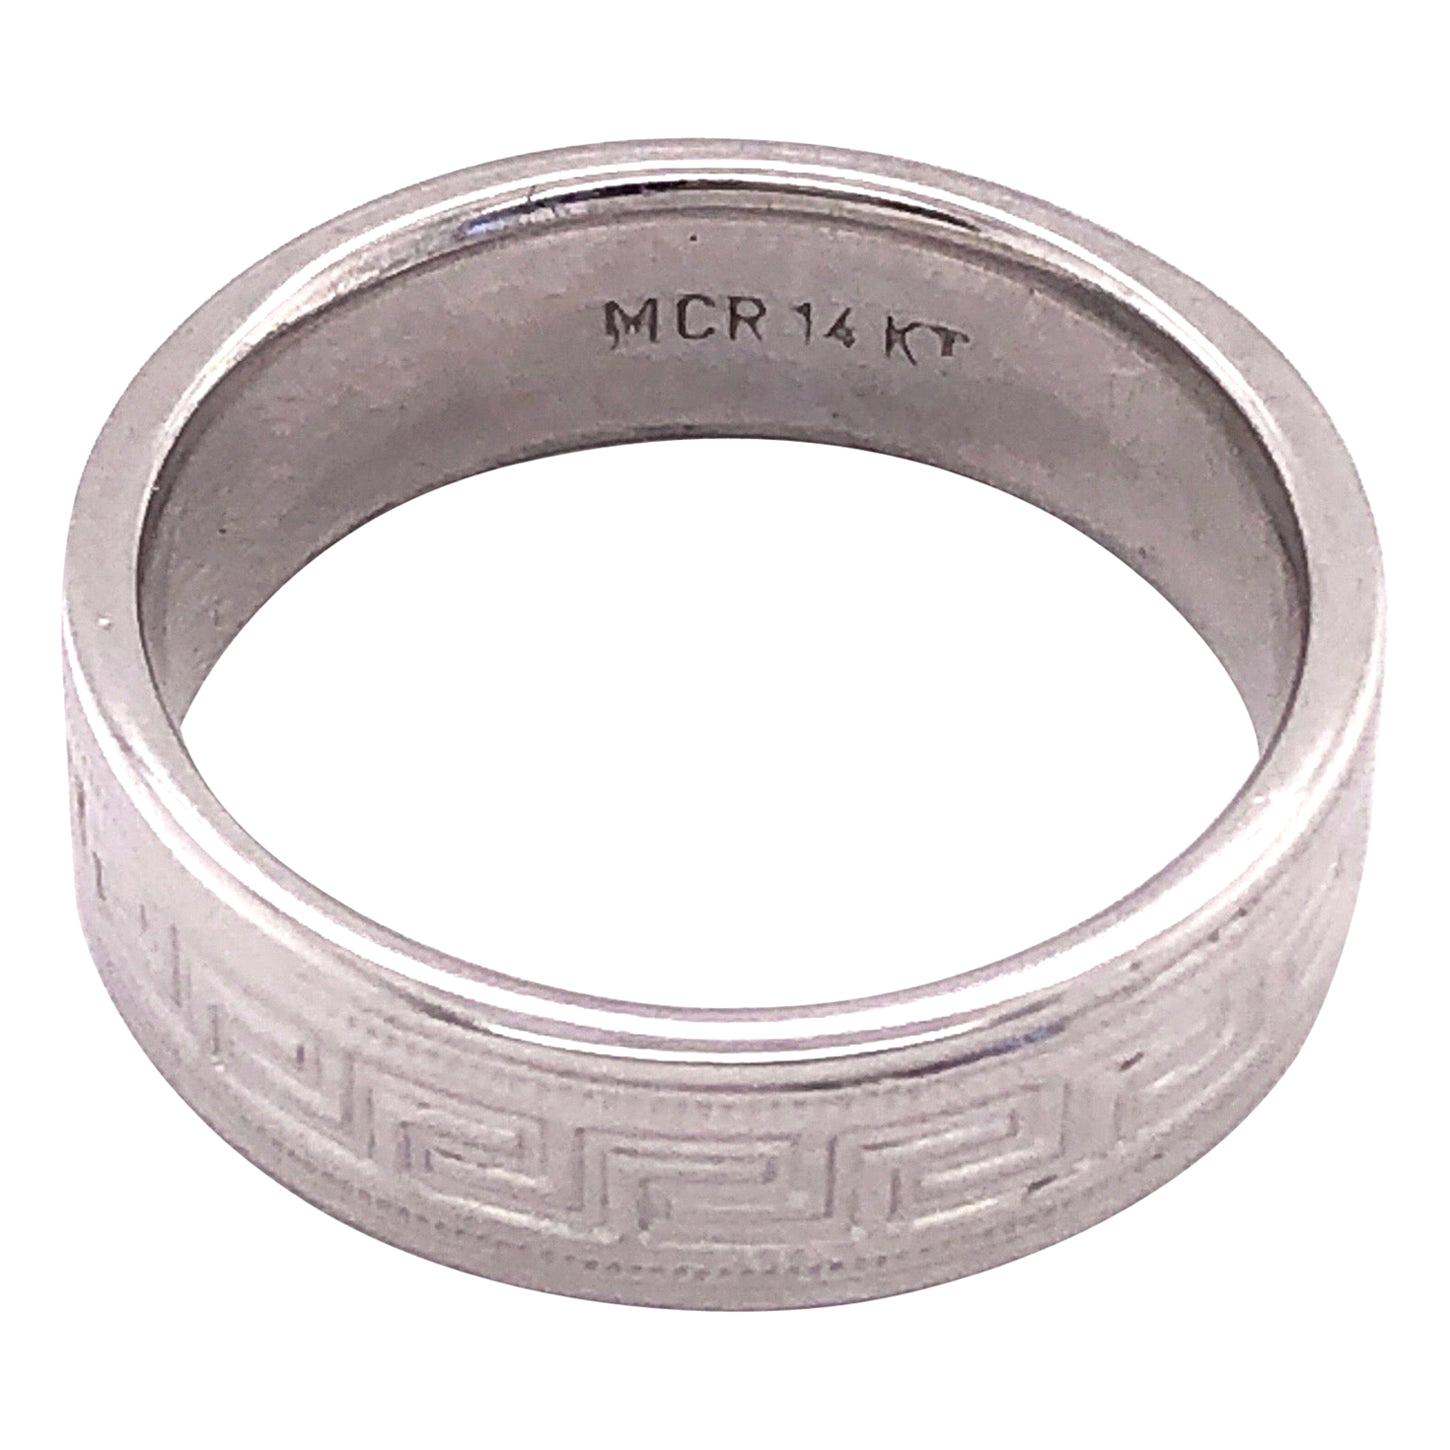 14 Karat White Gold Band Ring Wedding Band Ring Greek Key Design For Sale